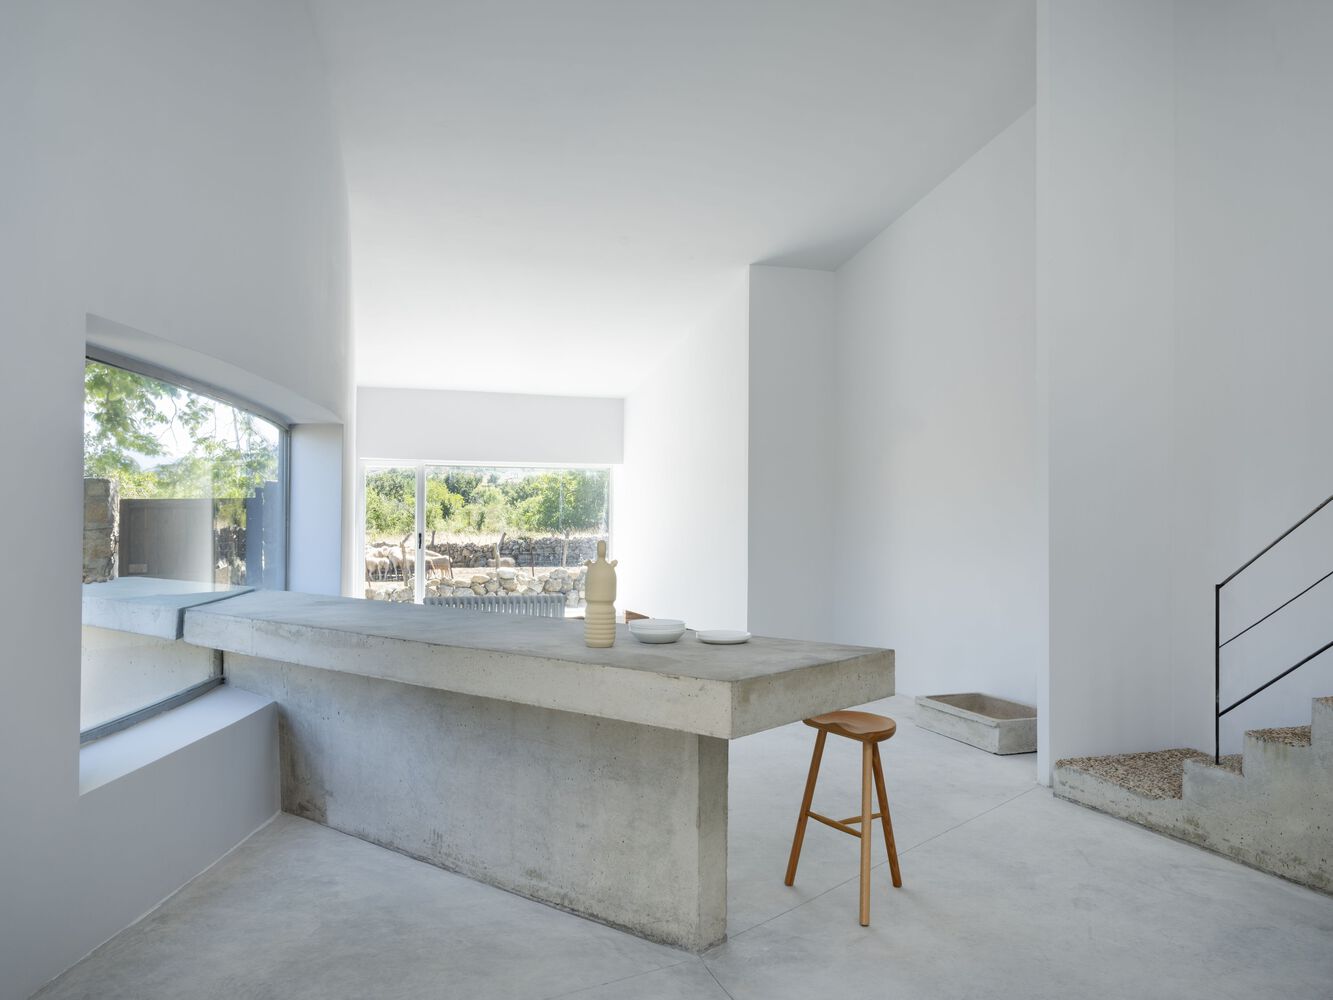 Raúl Almenara,西班牙,住宅设计,国外住宅设计案例,极简风格,庭院住宅,独栋住宅,140㎡,乡村住宅设计